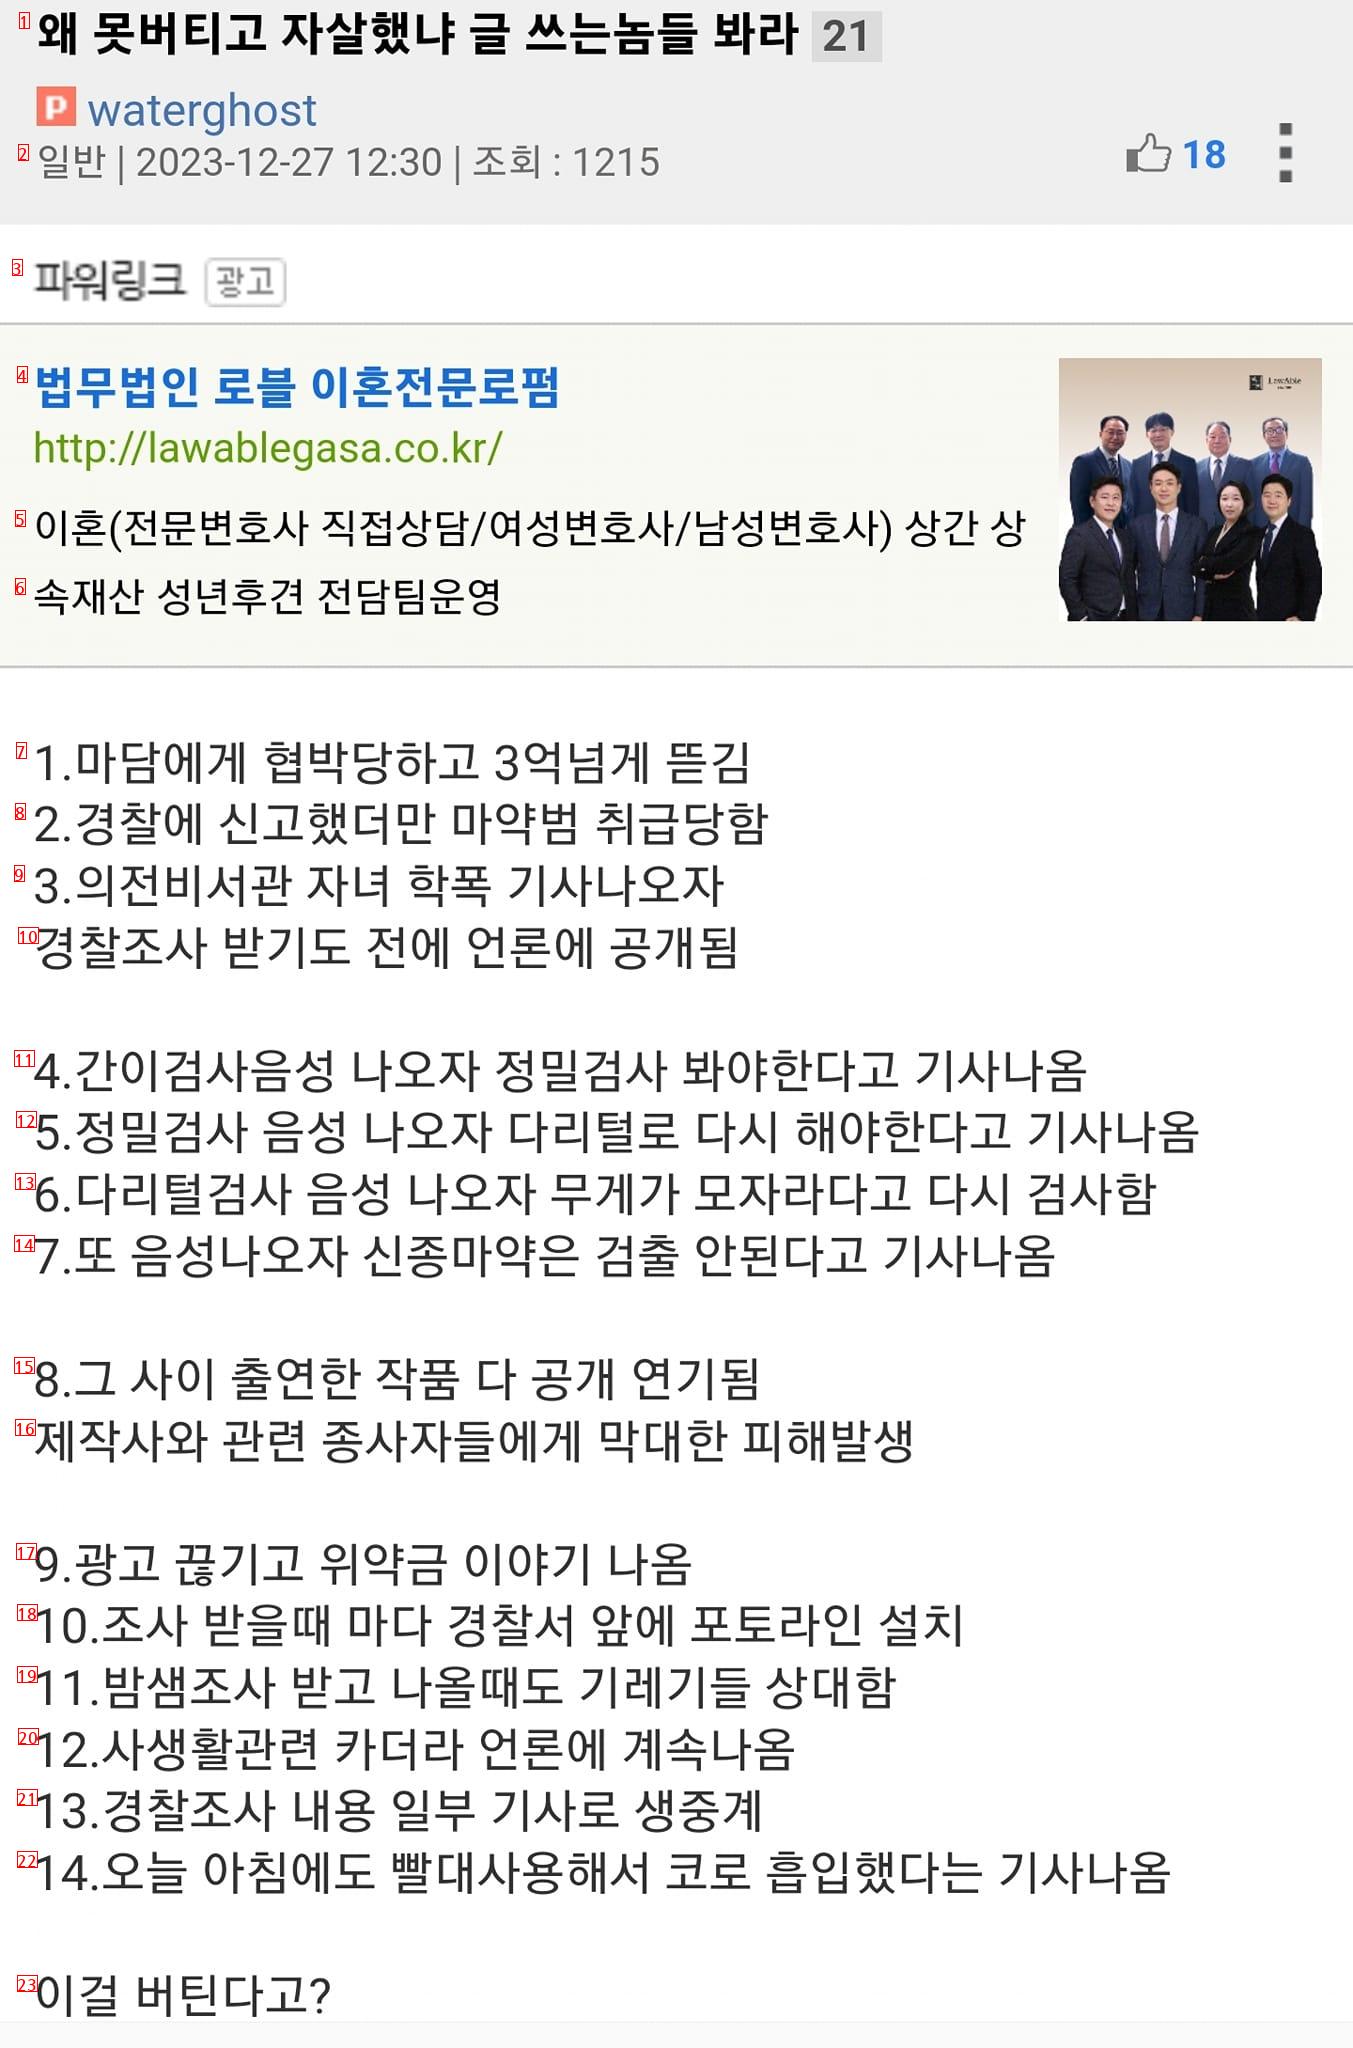 Lee Sun Kyun's case